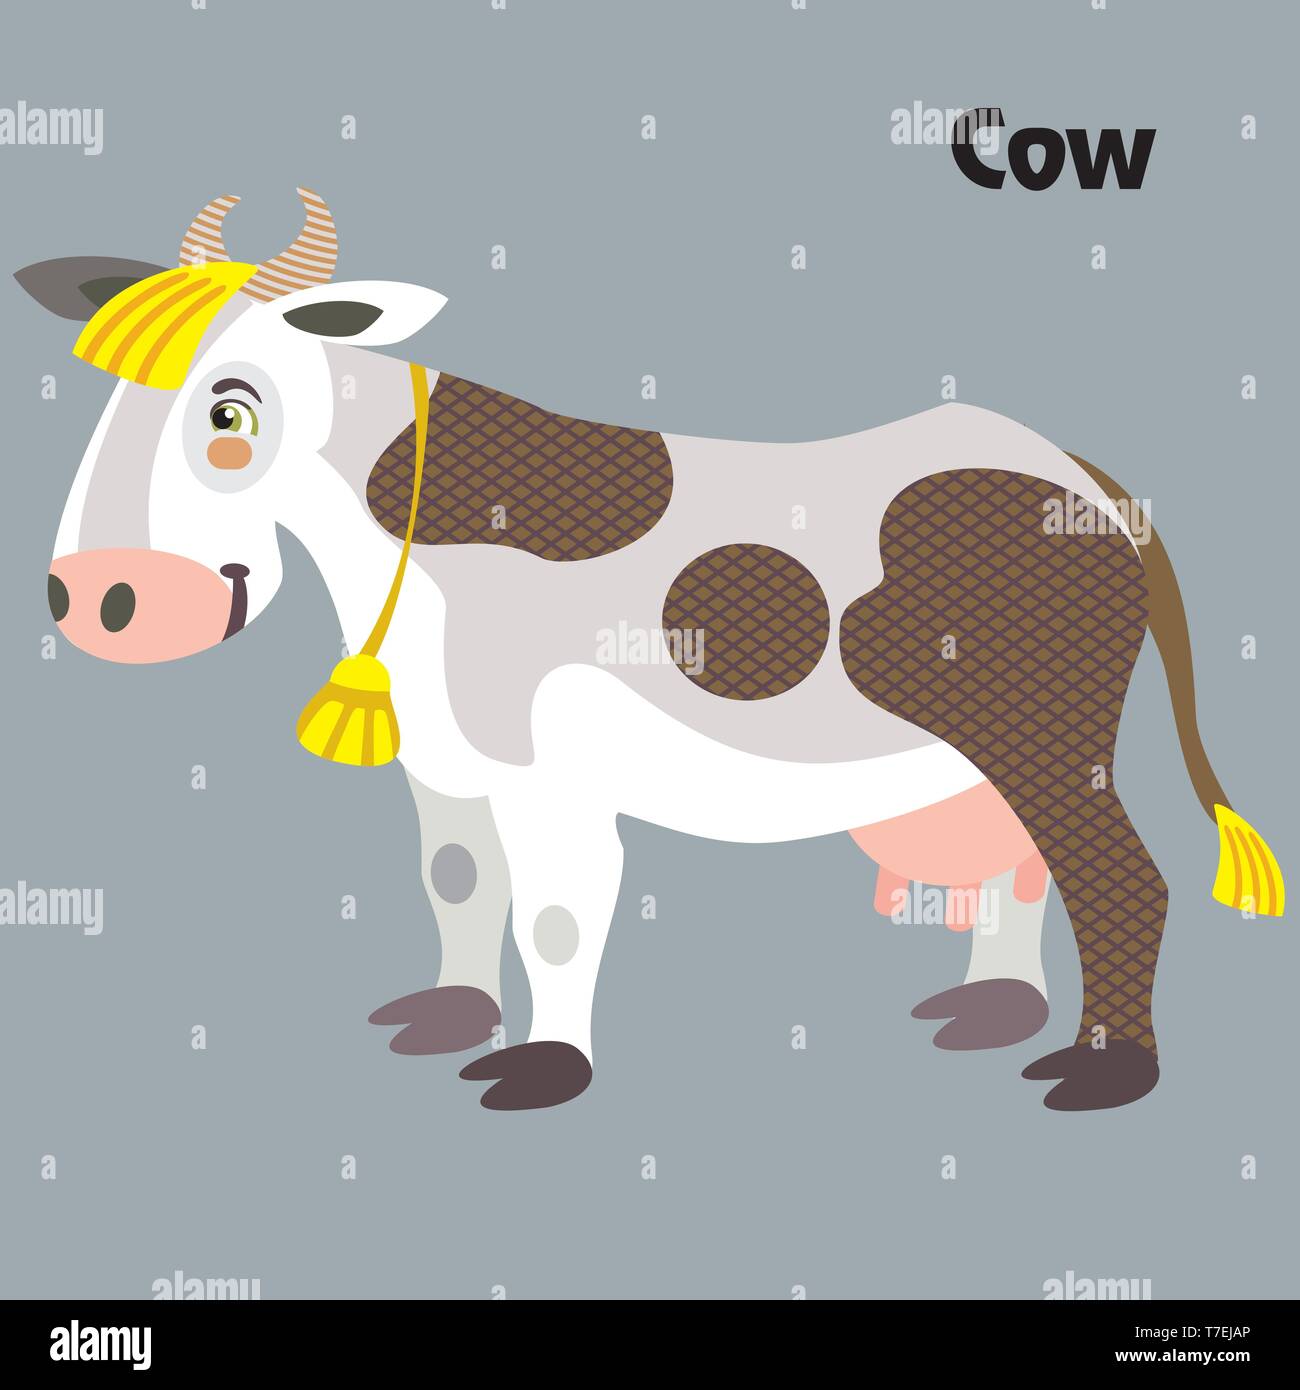 Bunt dekorativ Umrisse cute gehörnten Kuh steht im Profil. Bauernhof Tiere und Vögel Vektor cartoon Flachbild Abbildung in verschiedenen Farben isoliert Stock Vektor